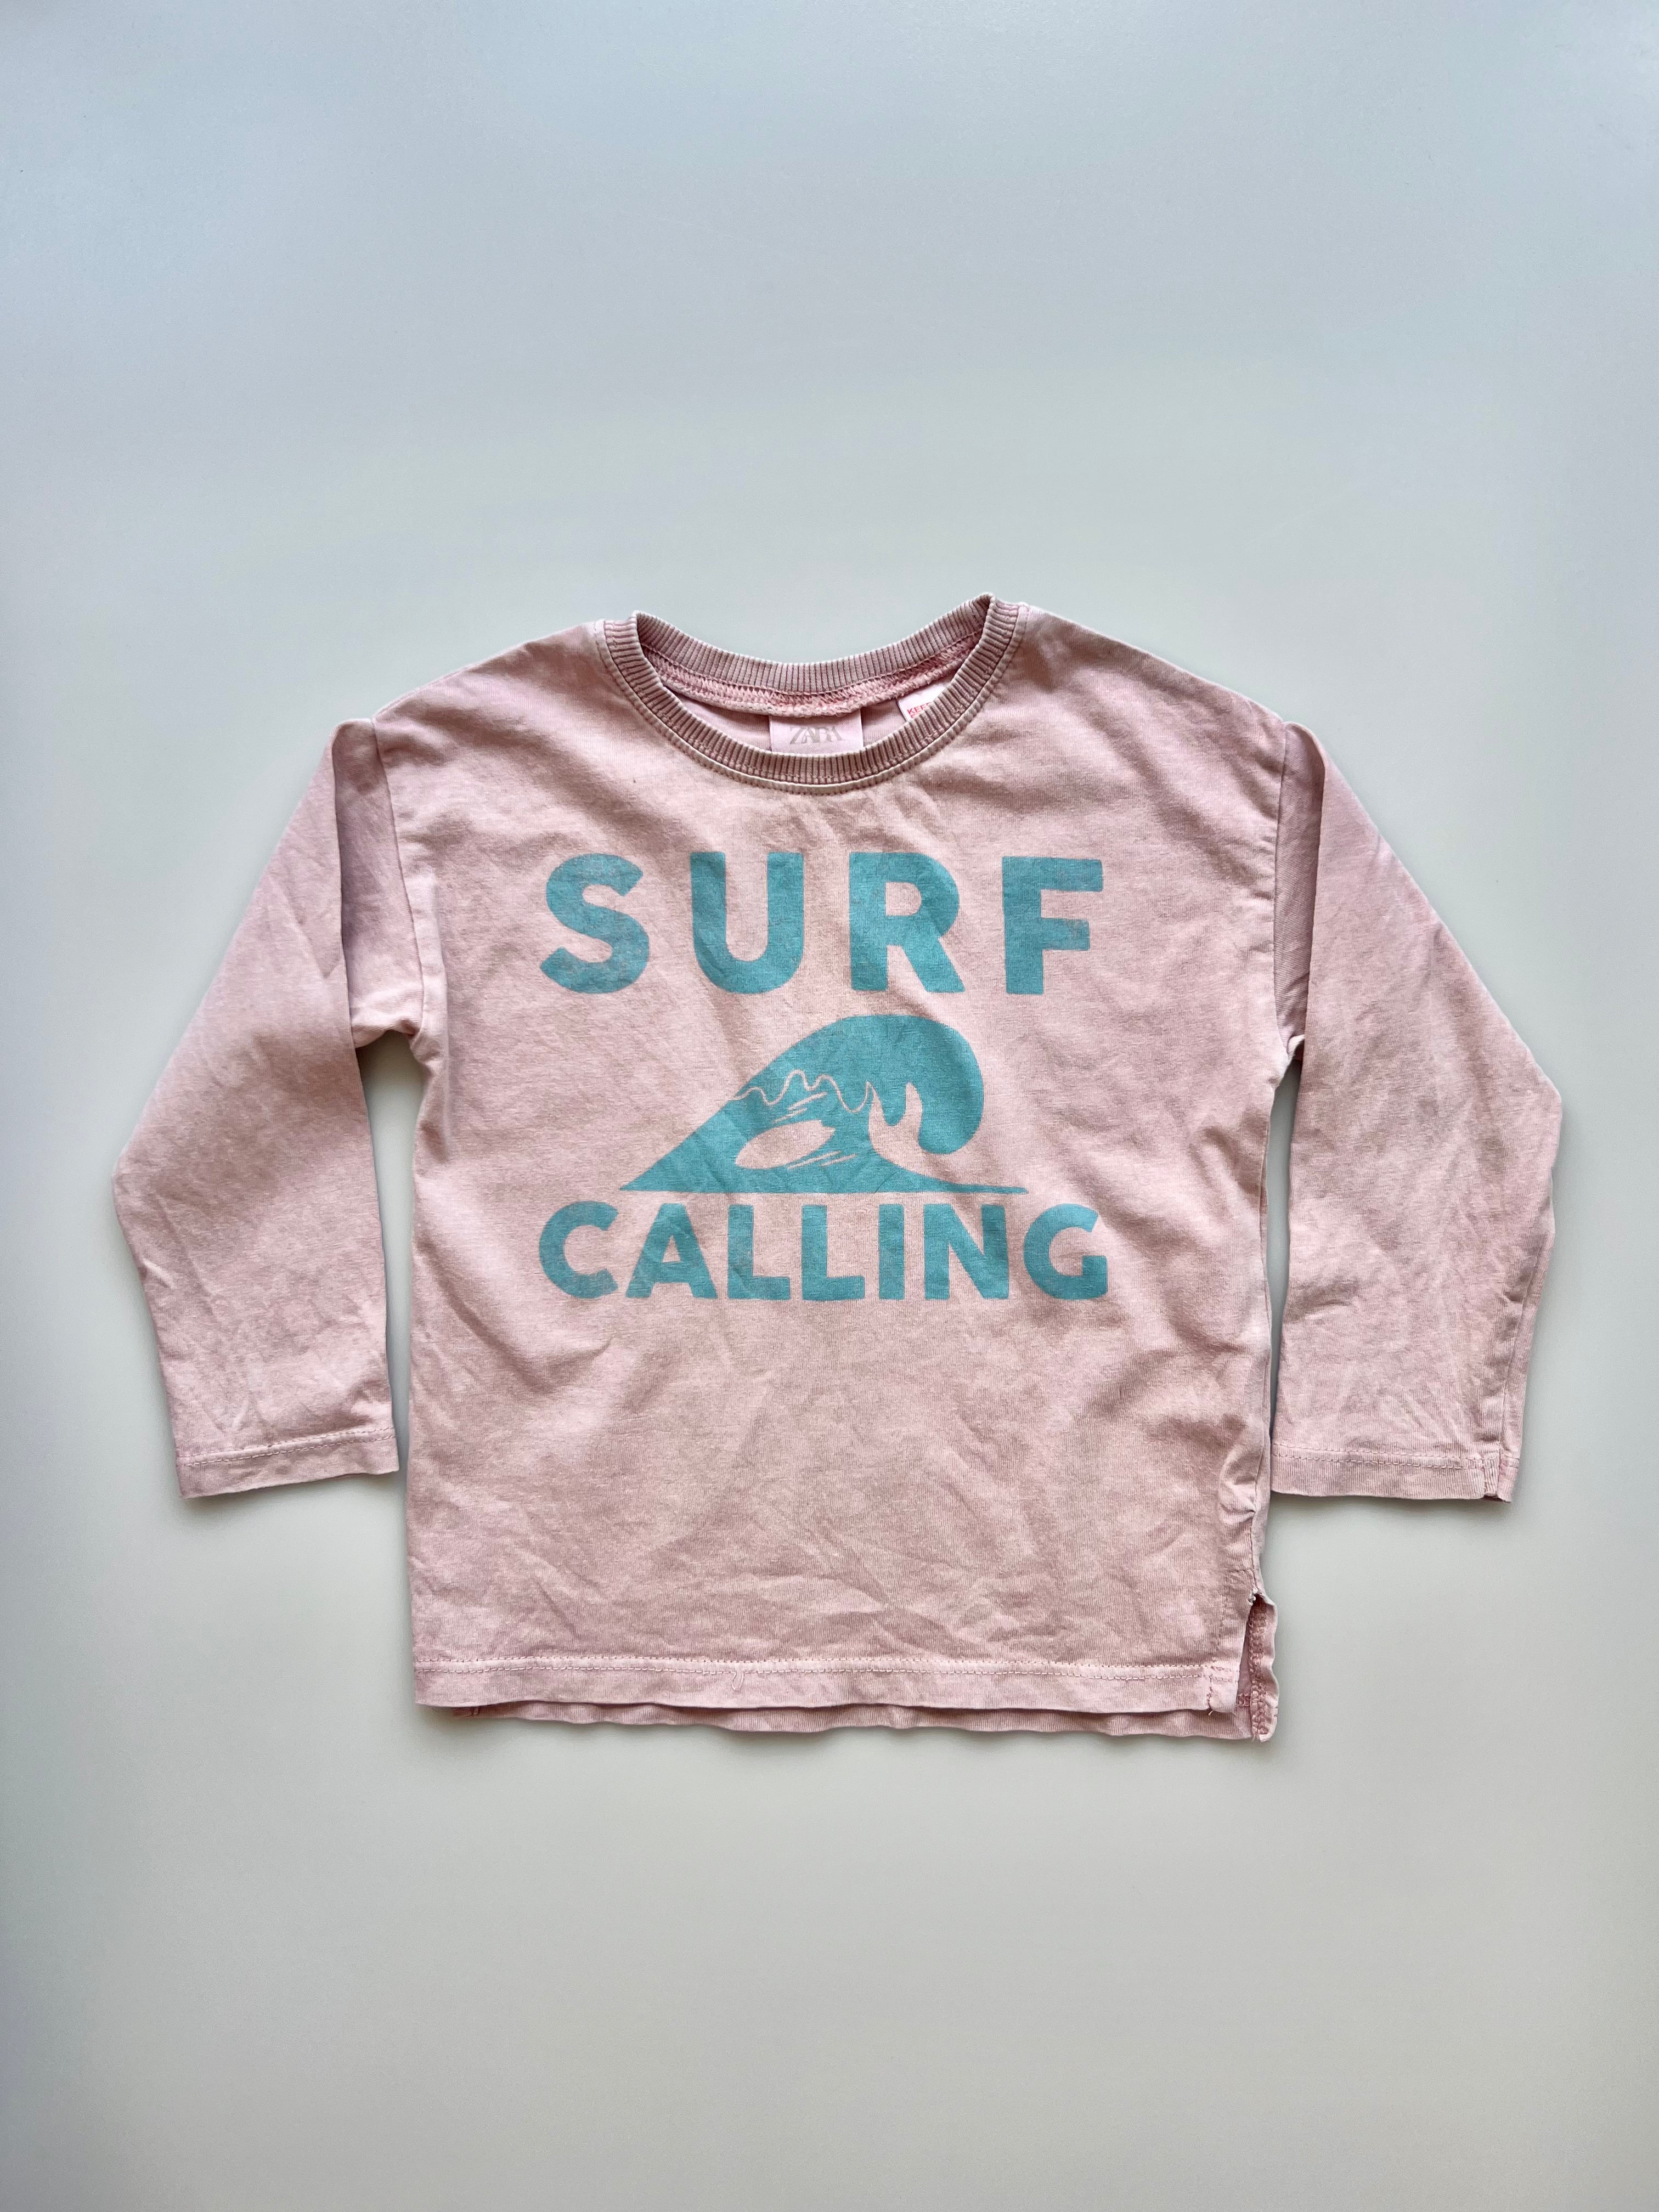 Zara Surf Calling Tee Shirt 12-18 Months